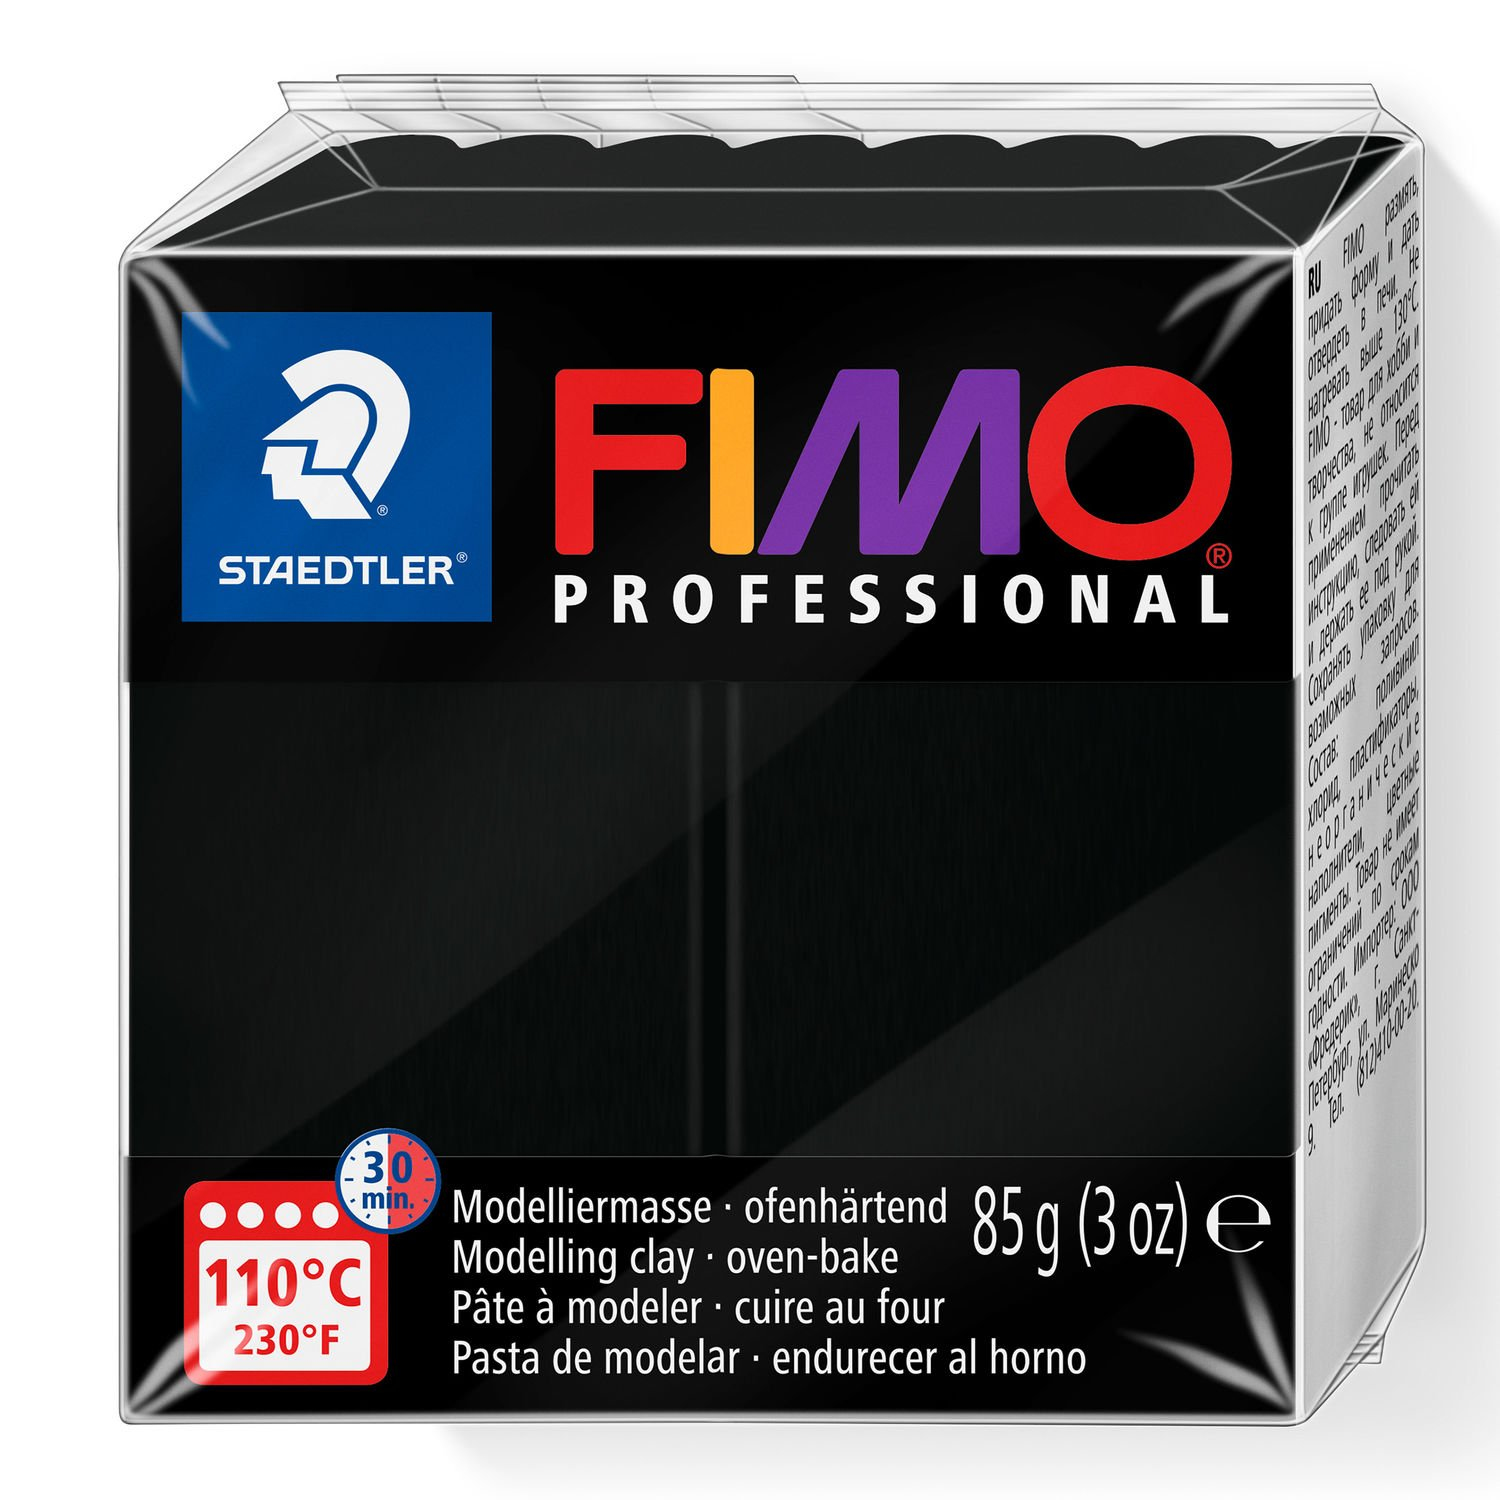 STAEDTLER FIMO 8004-009 - Knetmasse - Schwarz - 1 Stück(e) - 1 Farben - 110 °C - 30 min